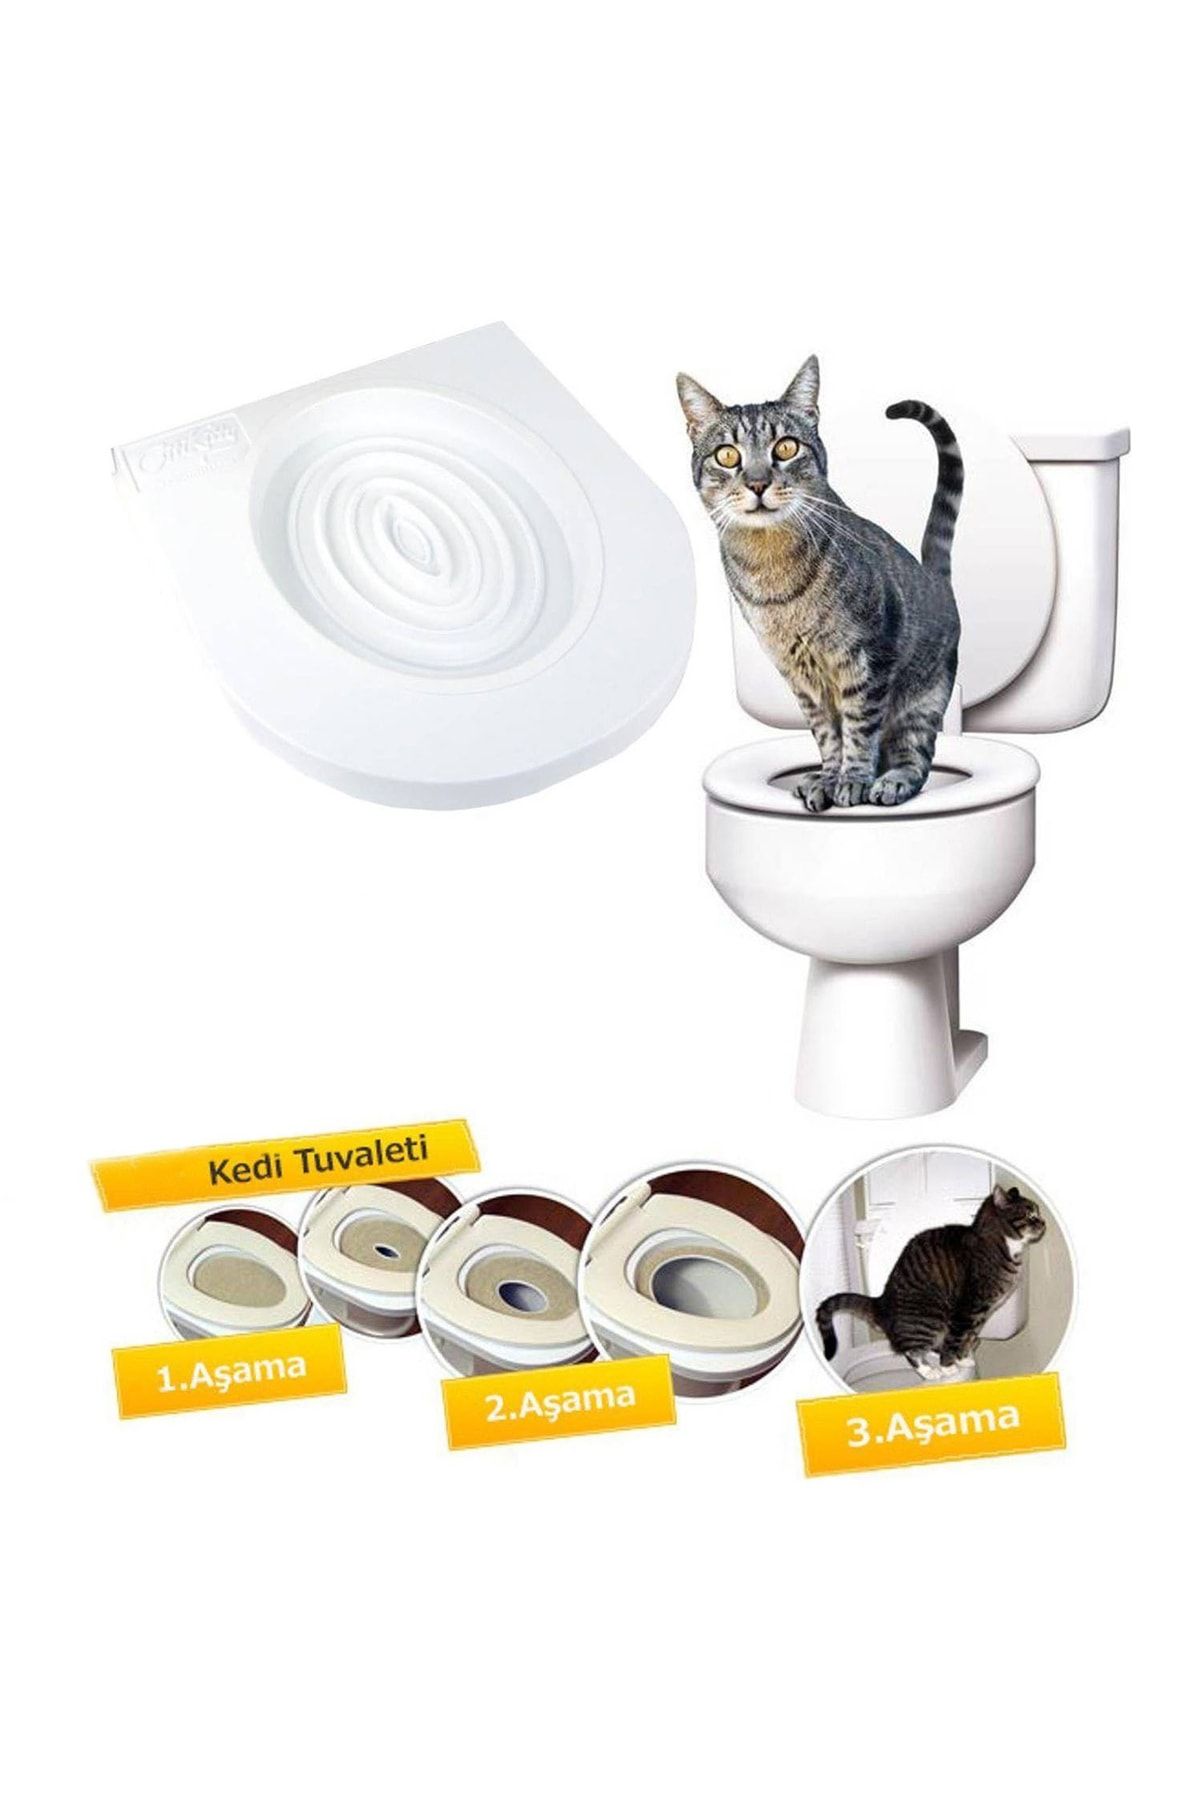 Microcase Kedi Tuvalet Eğitim Seti Kedi Klozet Aparatı - Al3229